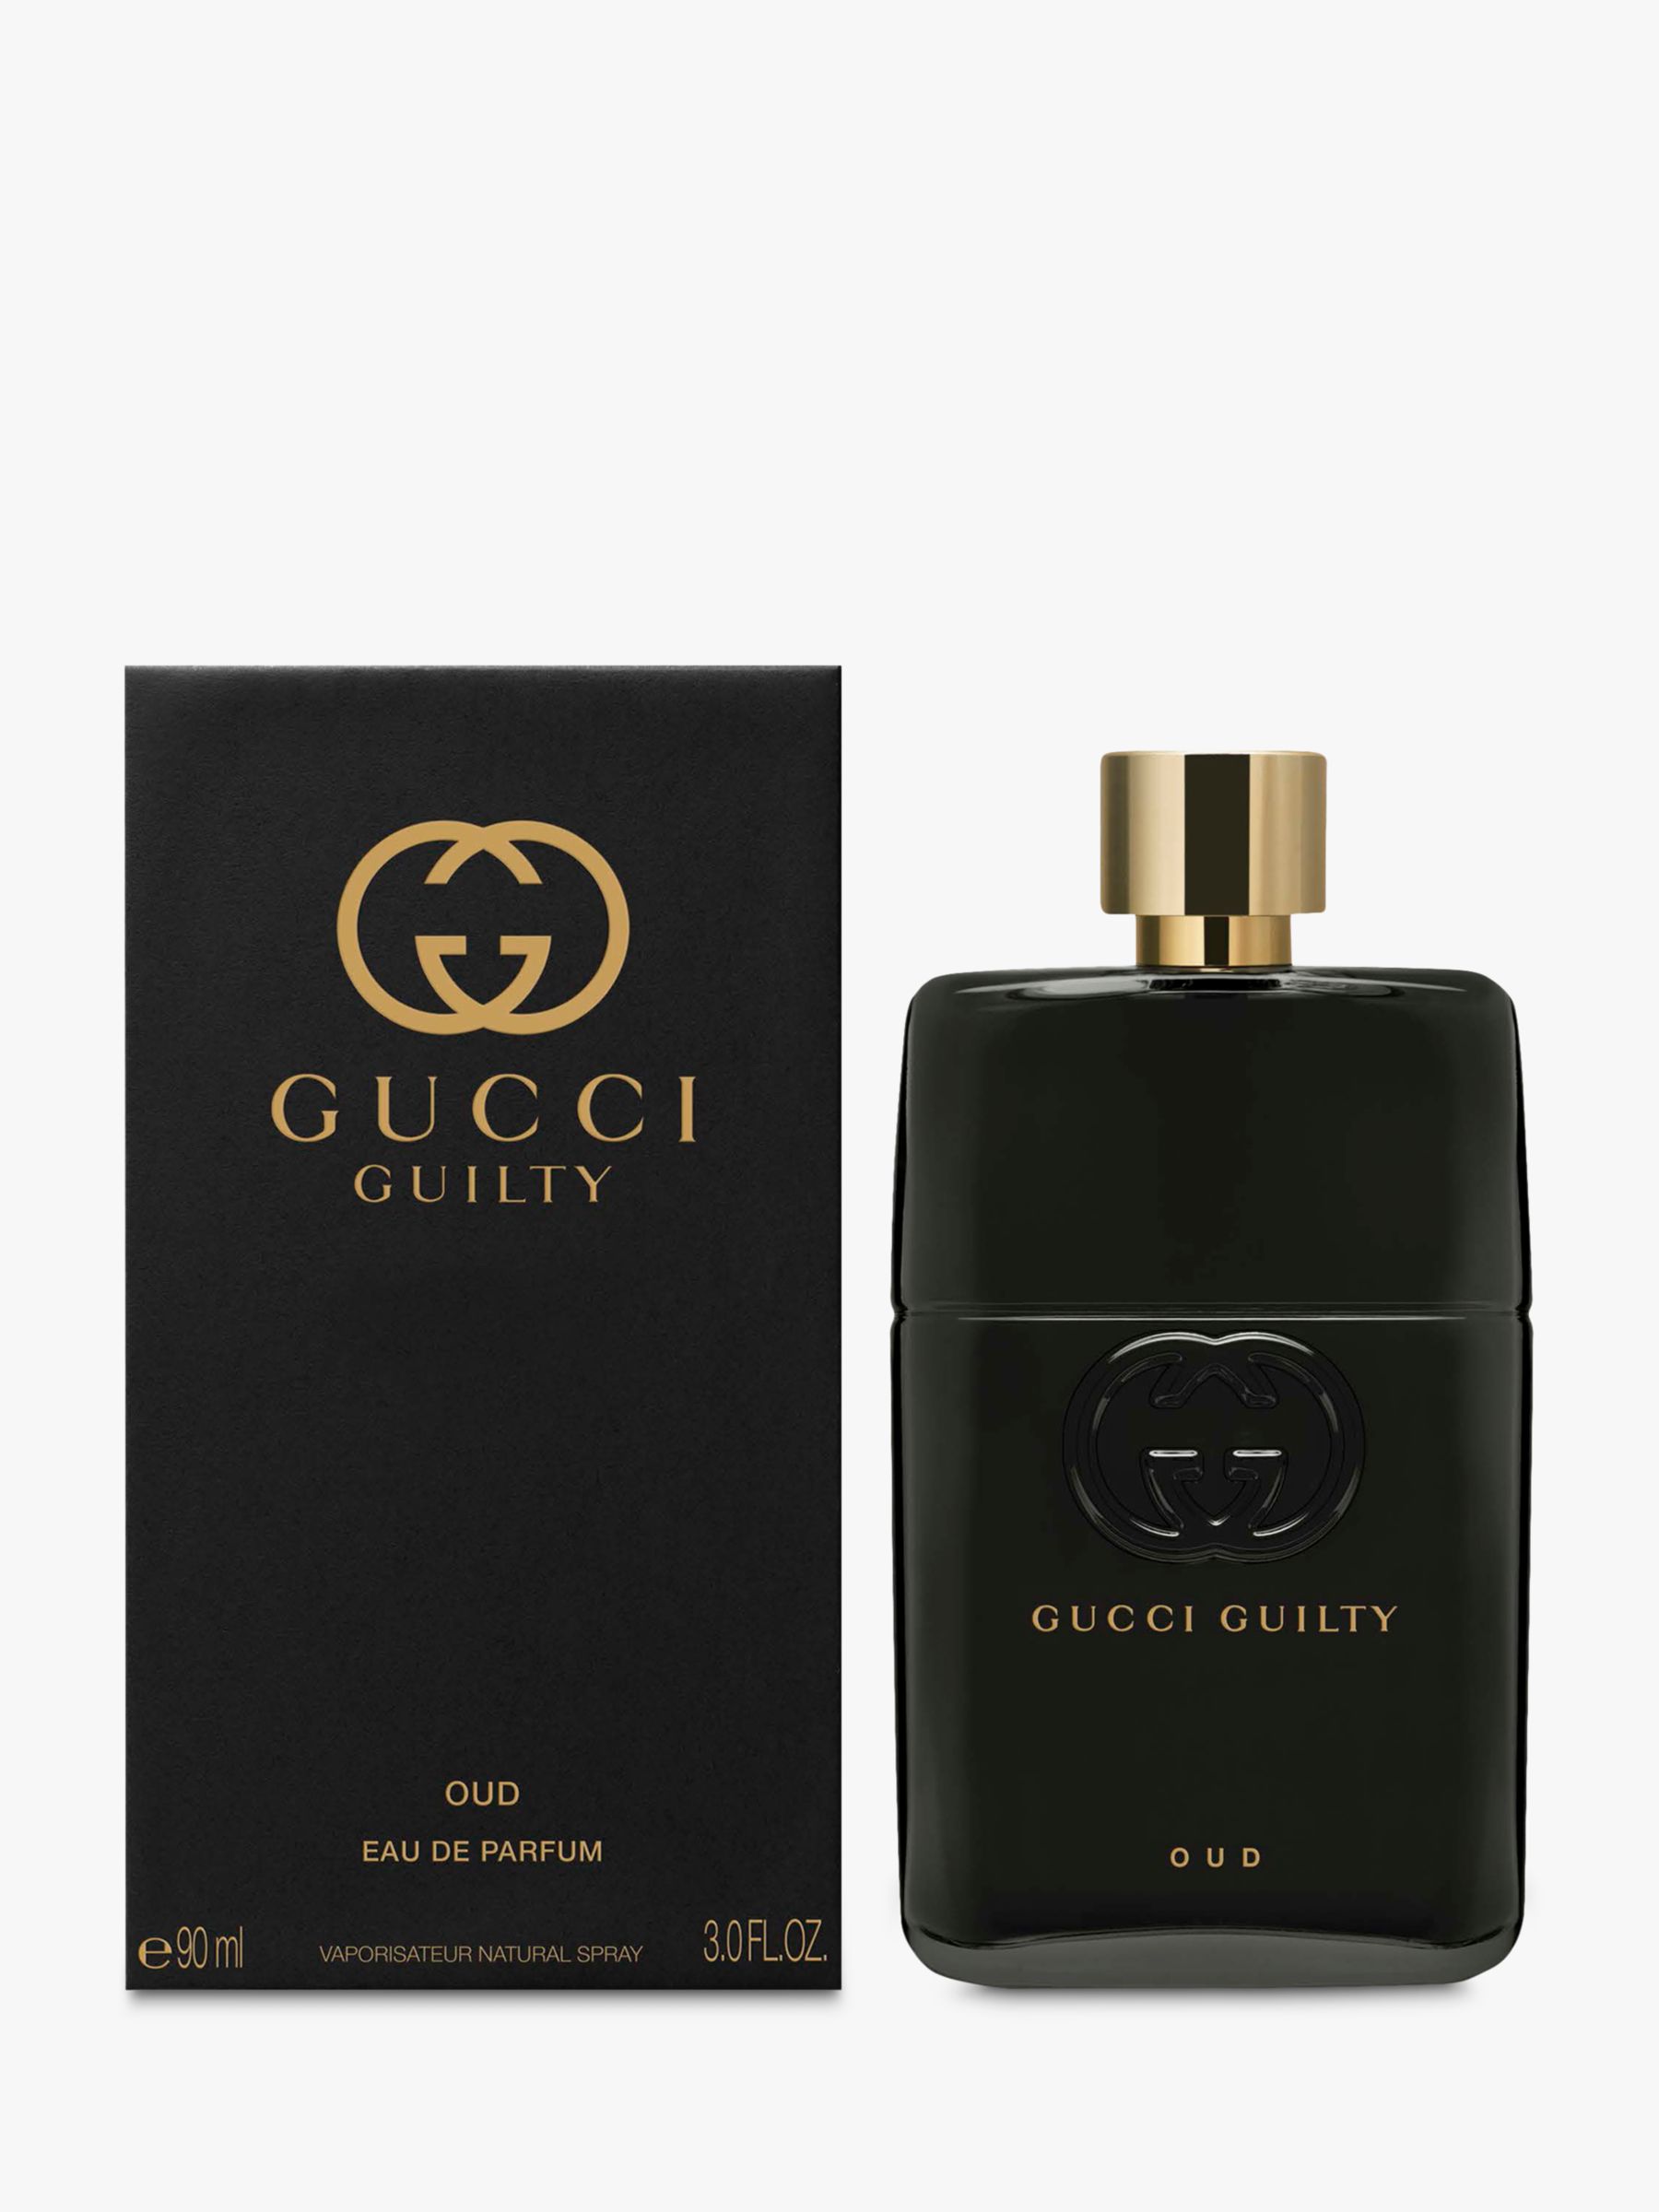 Gucci Guilty Oud Eau de Parfum For Him 